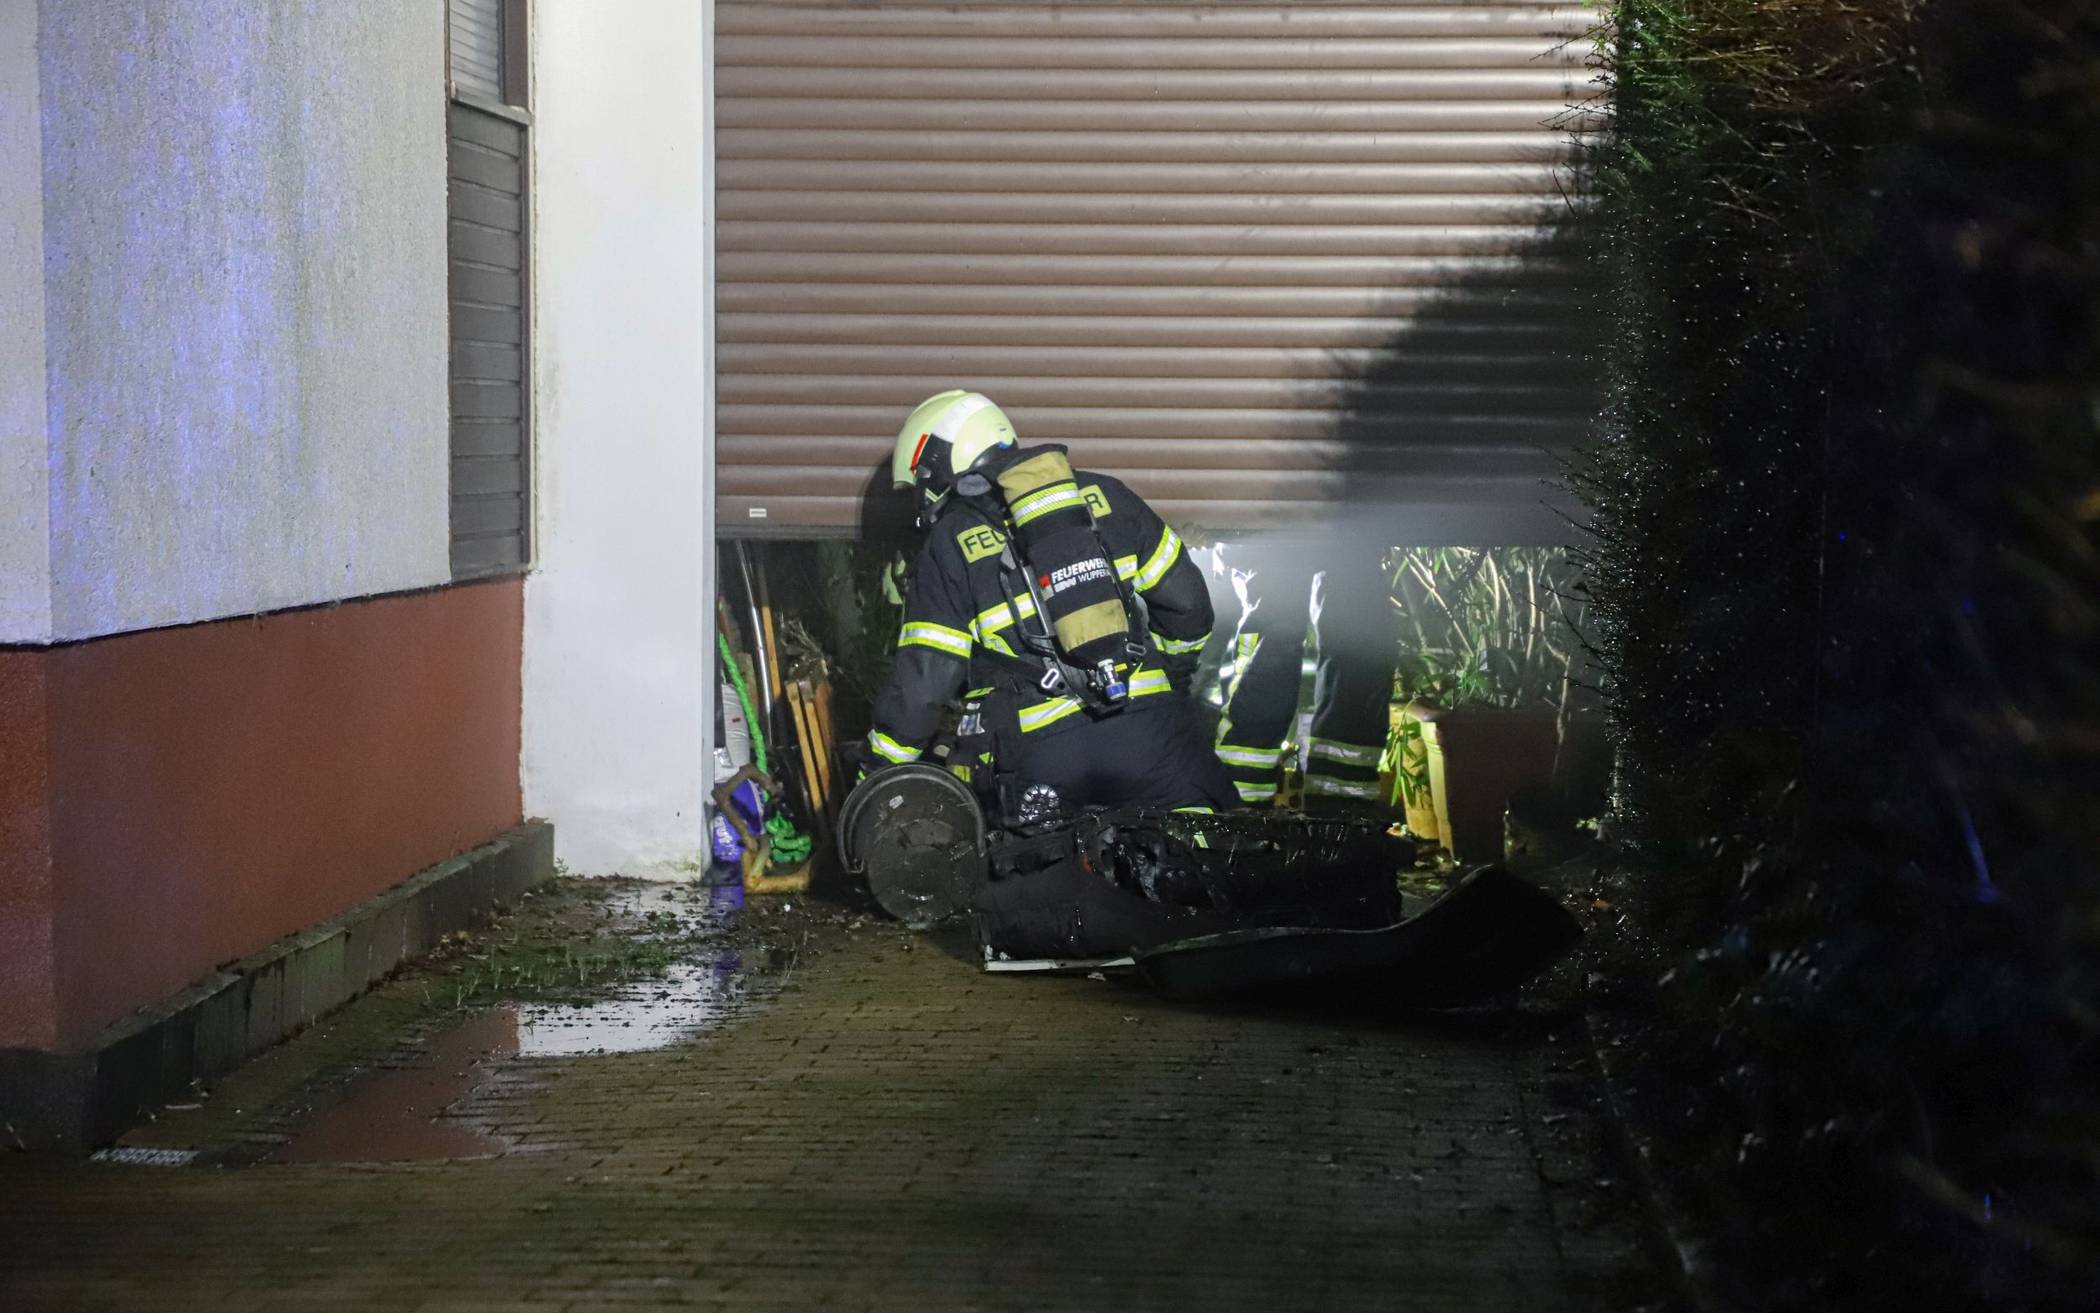 Bilder: Motorrad brennt in Garage​ in Wuppertal